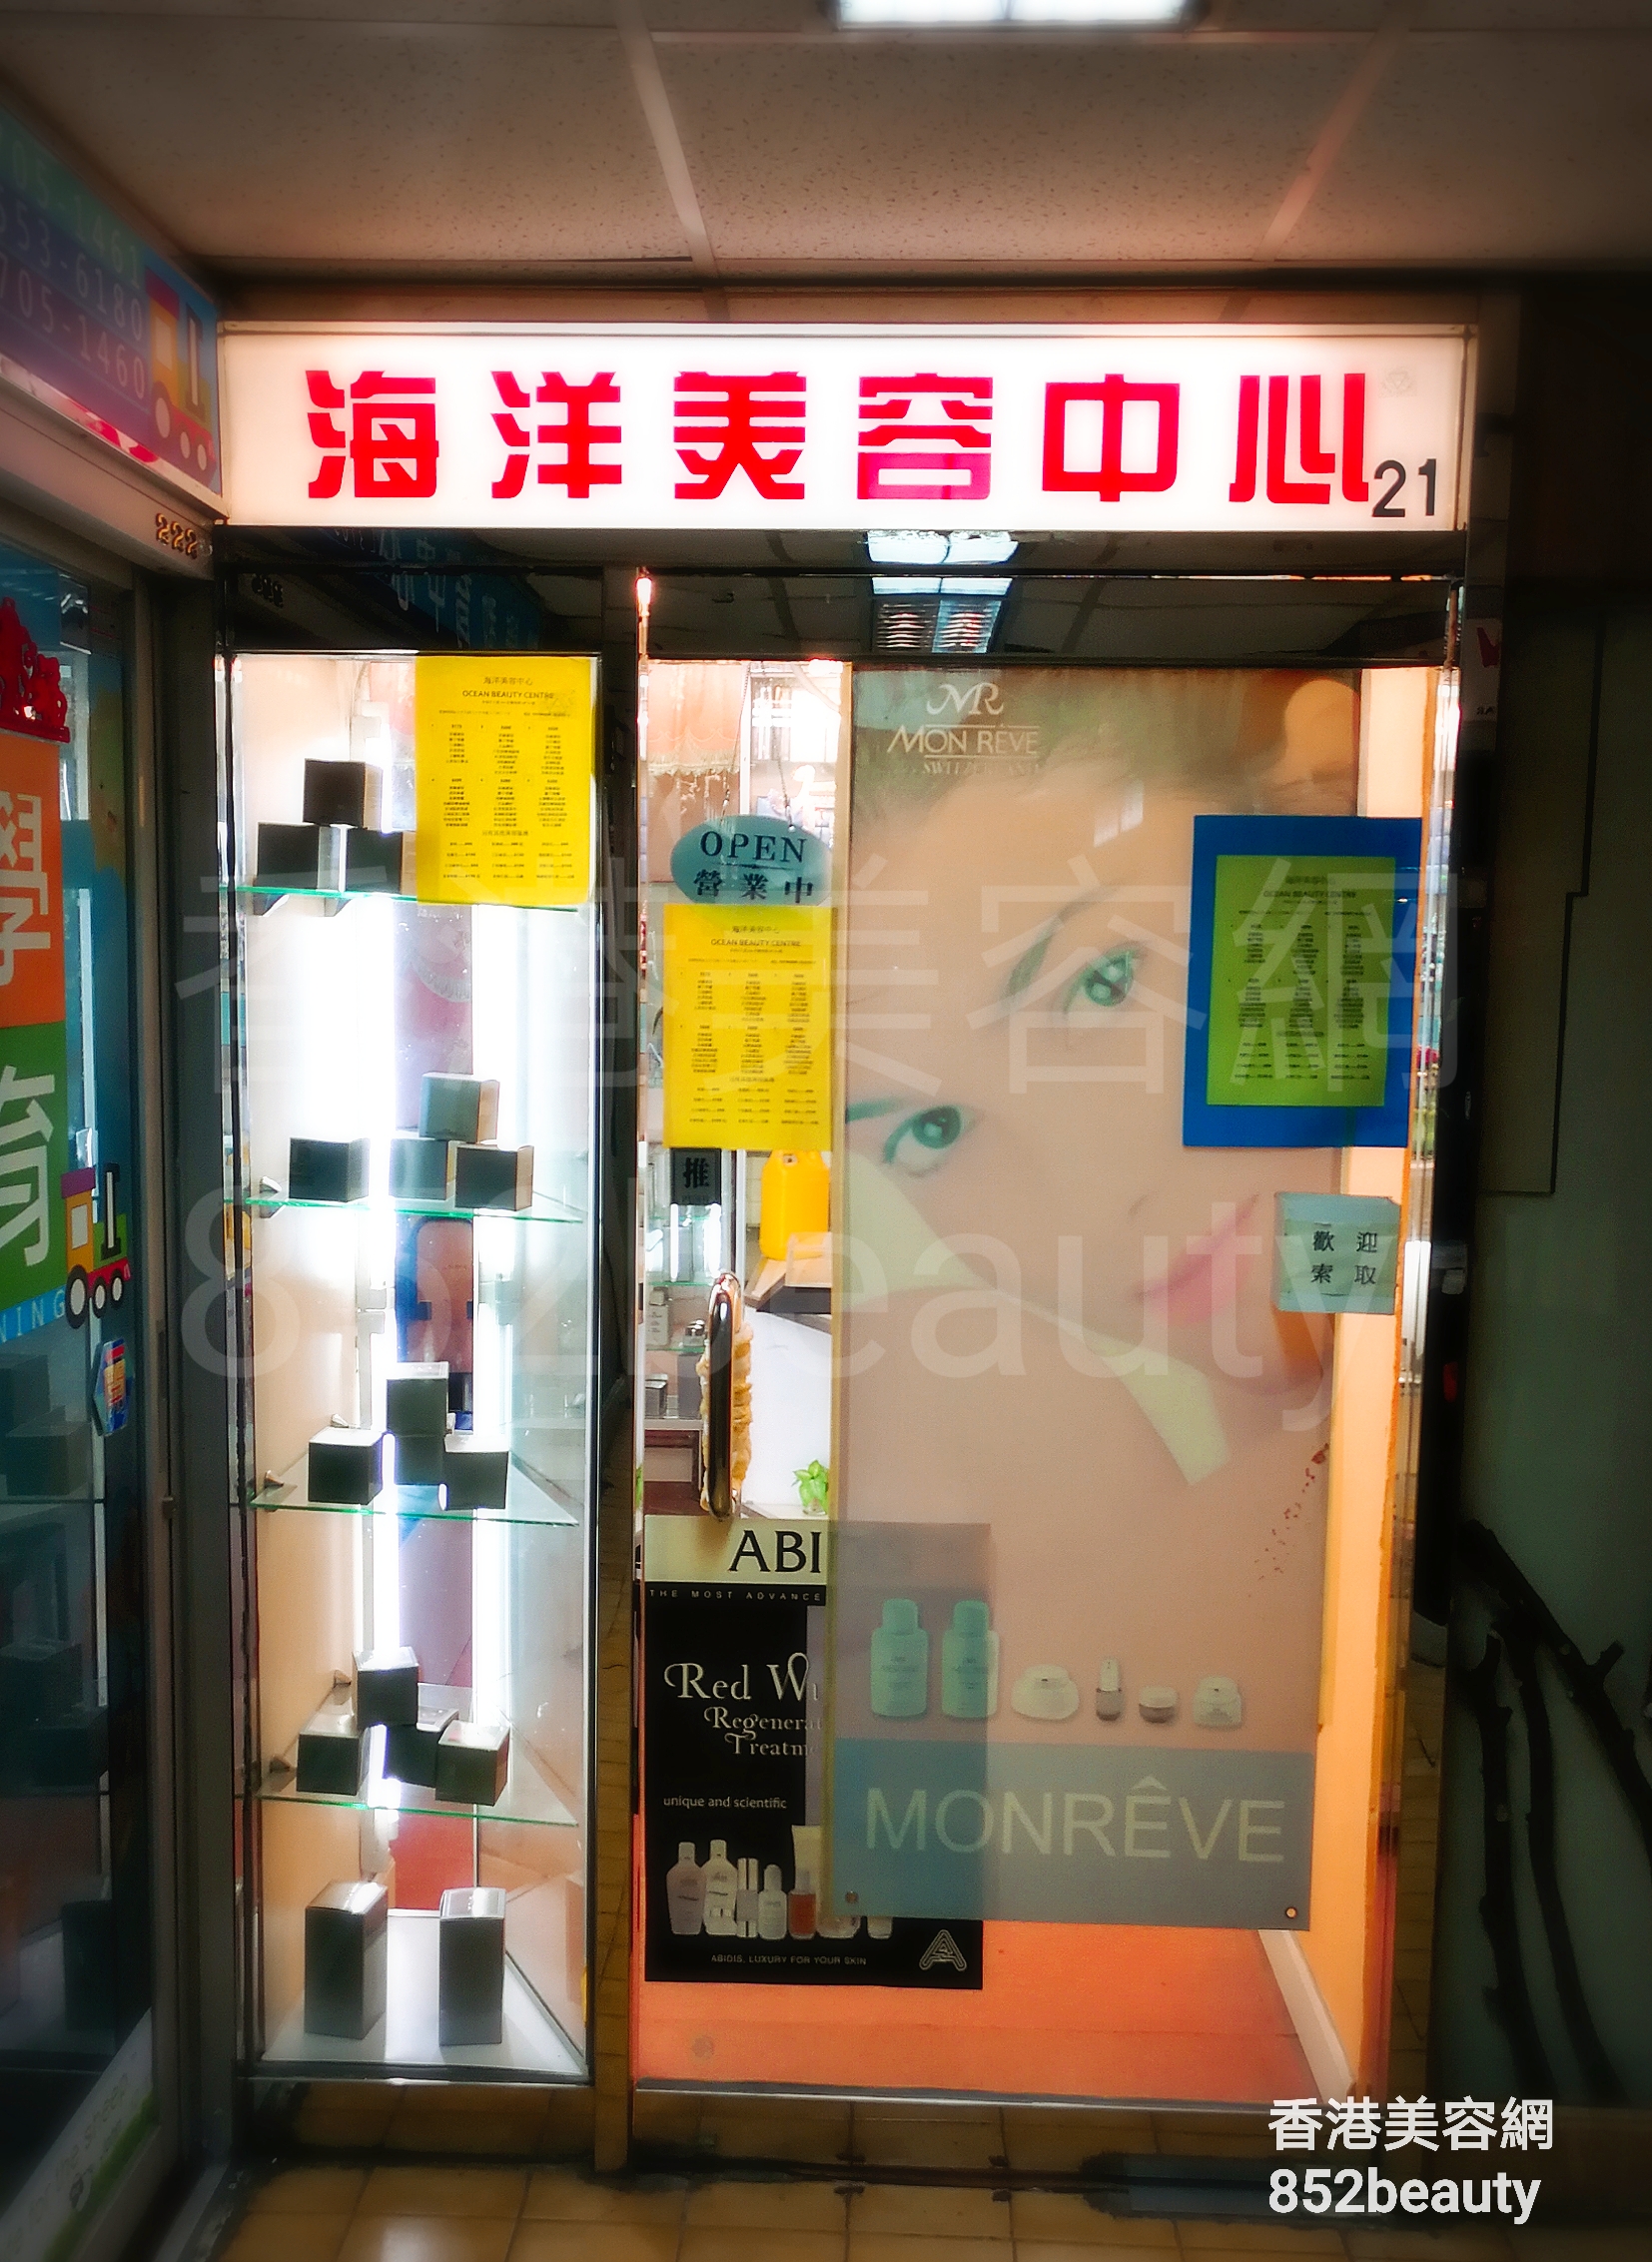 香港美容網 Hong Kong Beauty Salon 美容院 / 美容師: 海洋美容中心